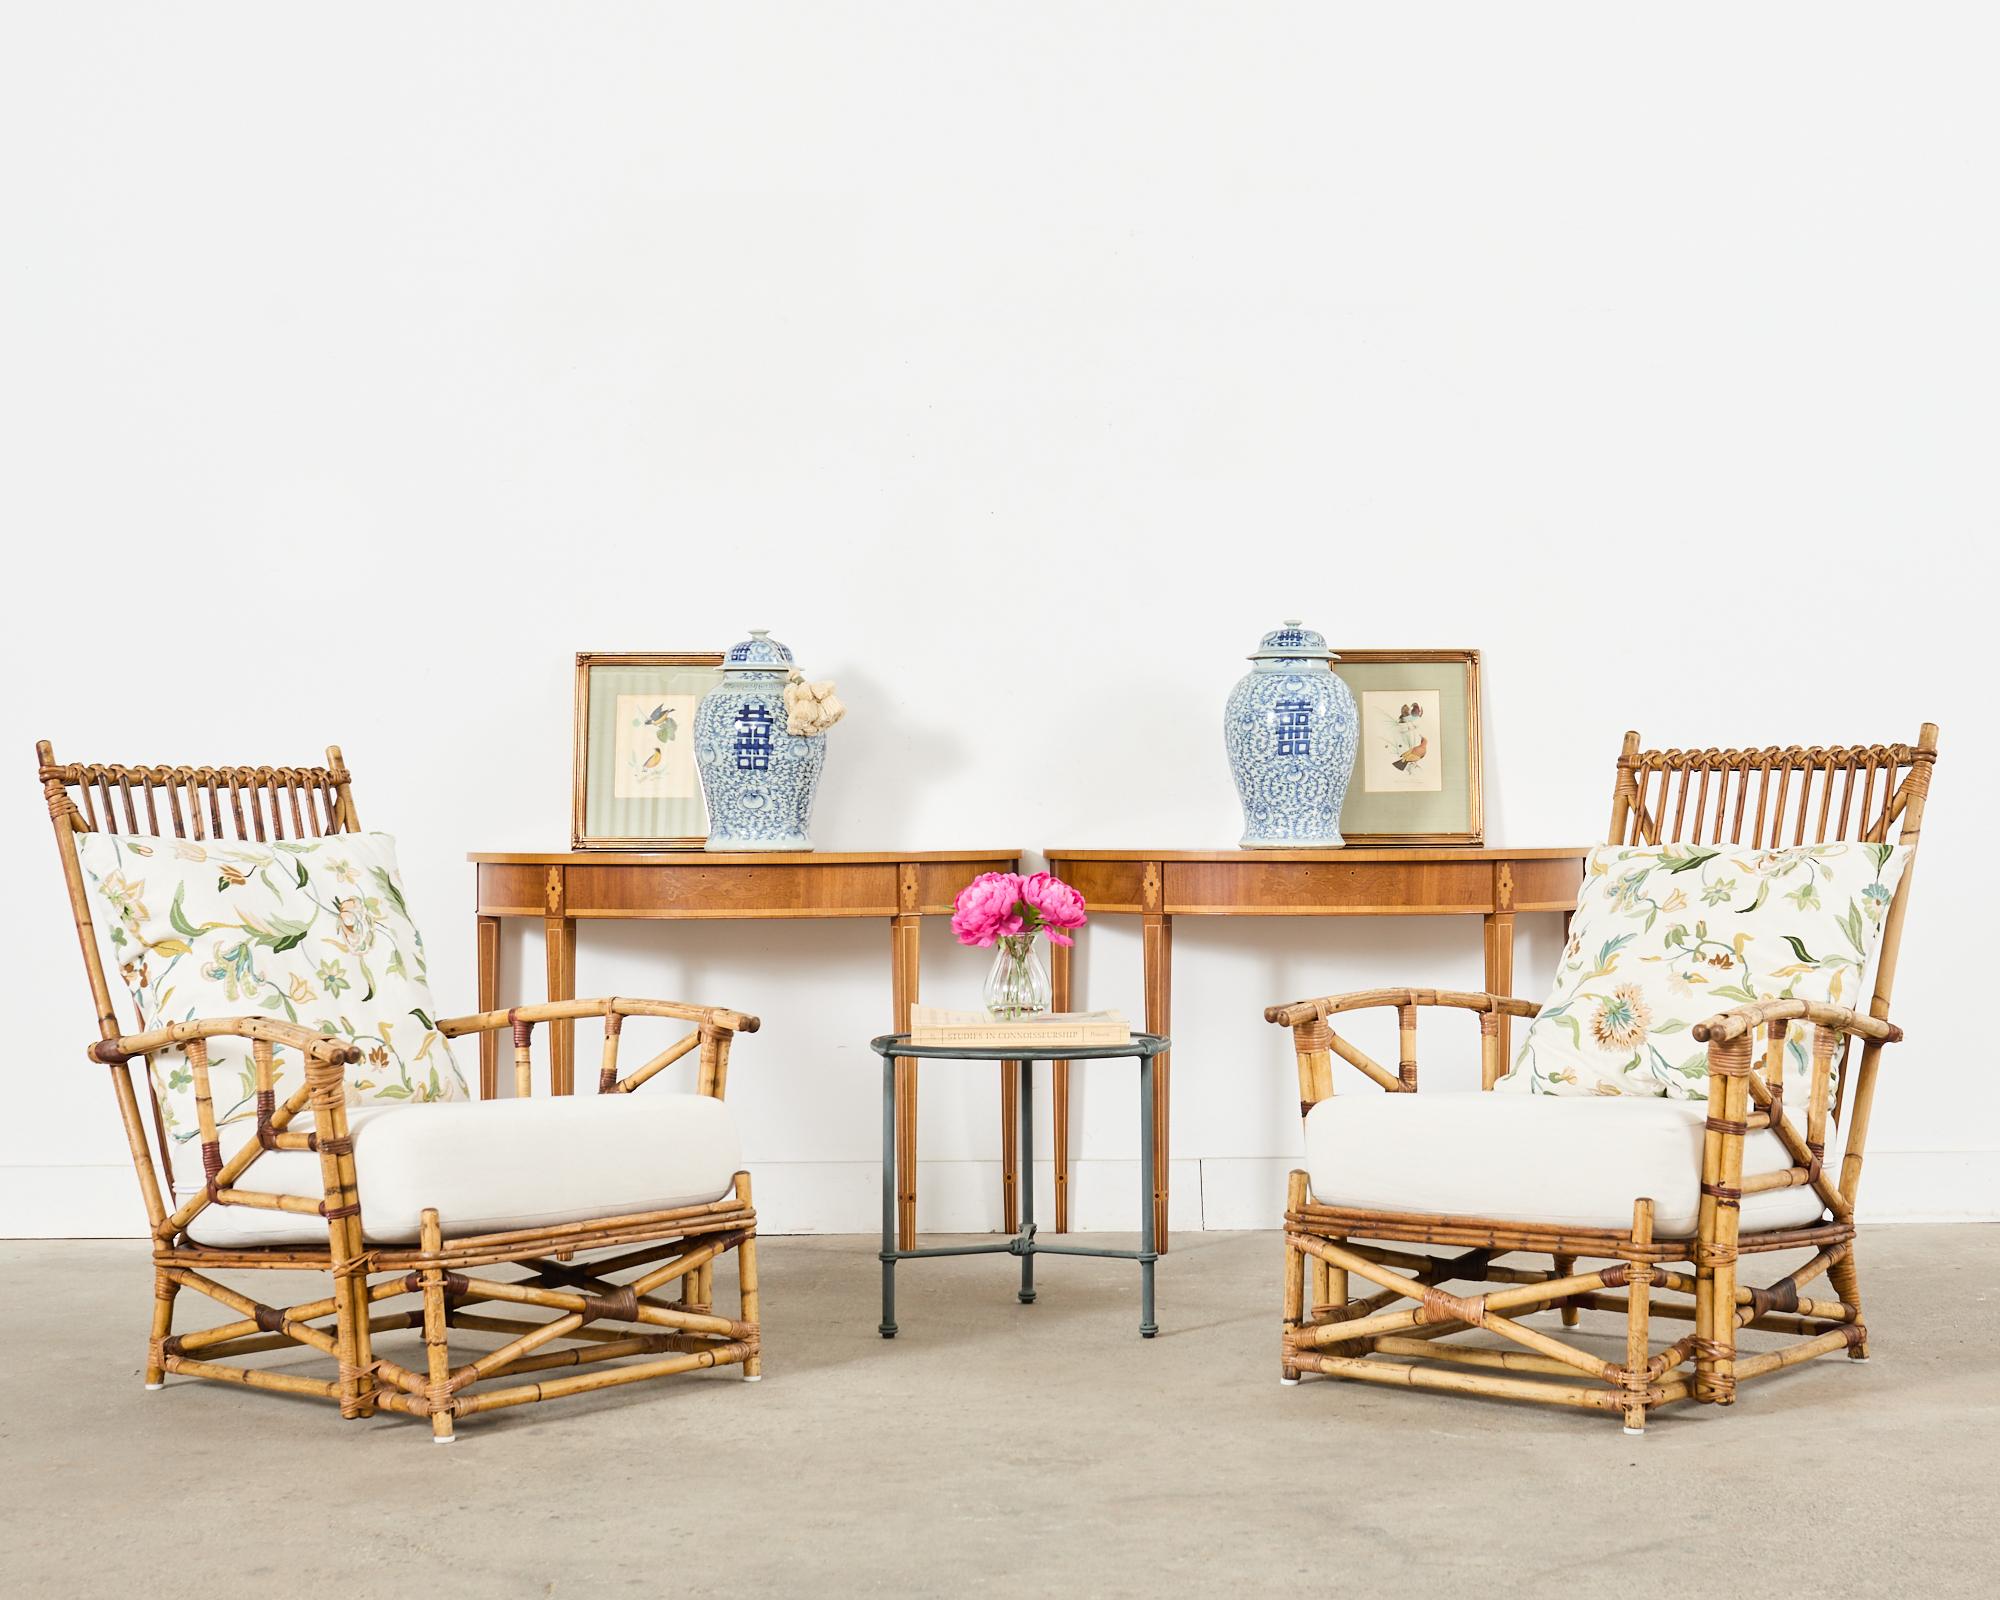 Superbe paire de chaises adirondack ou de salon labellisées du début du 20e siècle, conçues par Heywood-Wakefield Co. Wakefield, Massachusetts. Chaises d'époque 